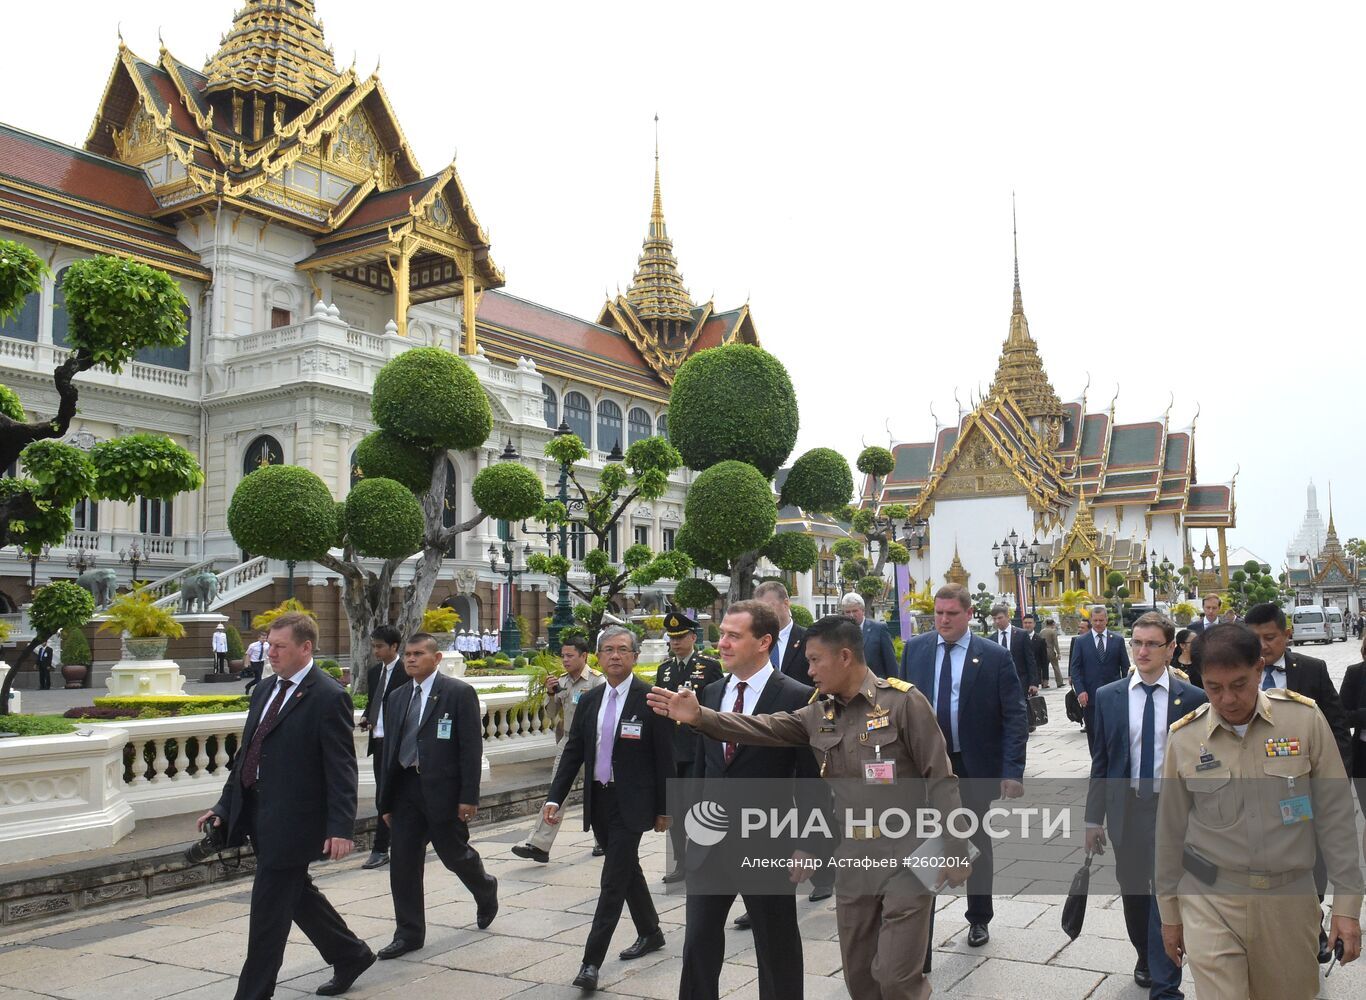 سفير روسيا في بانكوك: تايلاند باتت أقرب إلى روسيا من أي دولة أوروبية